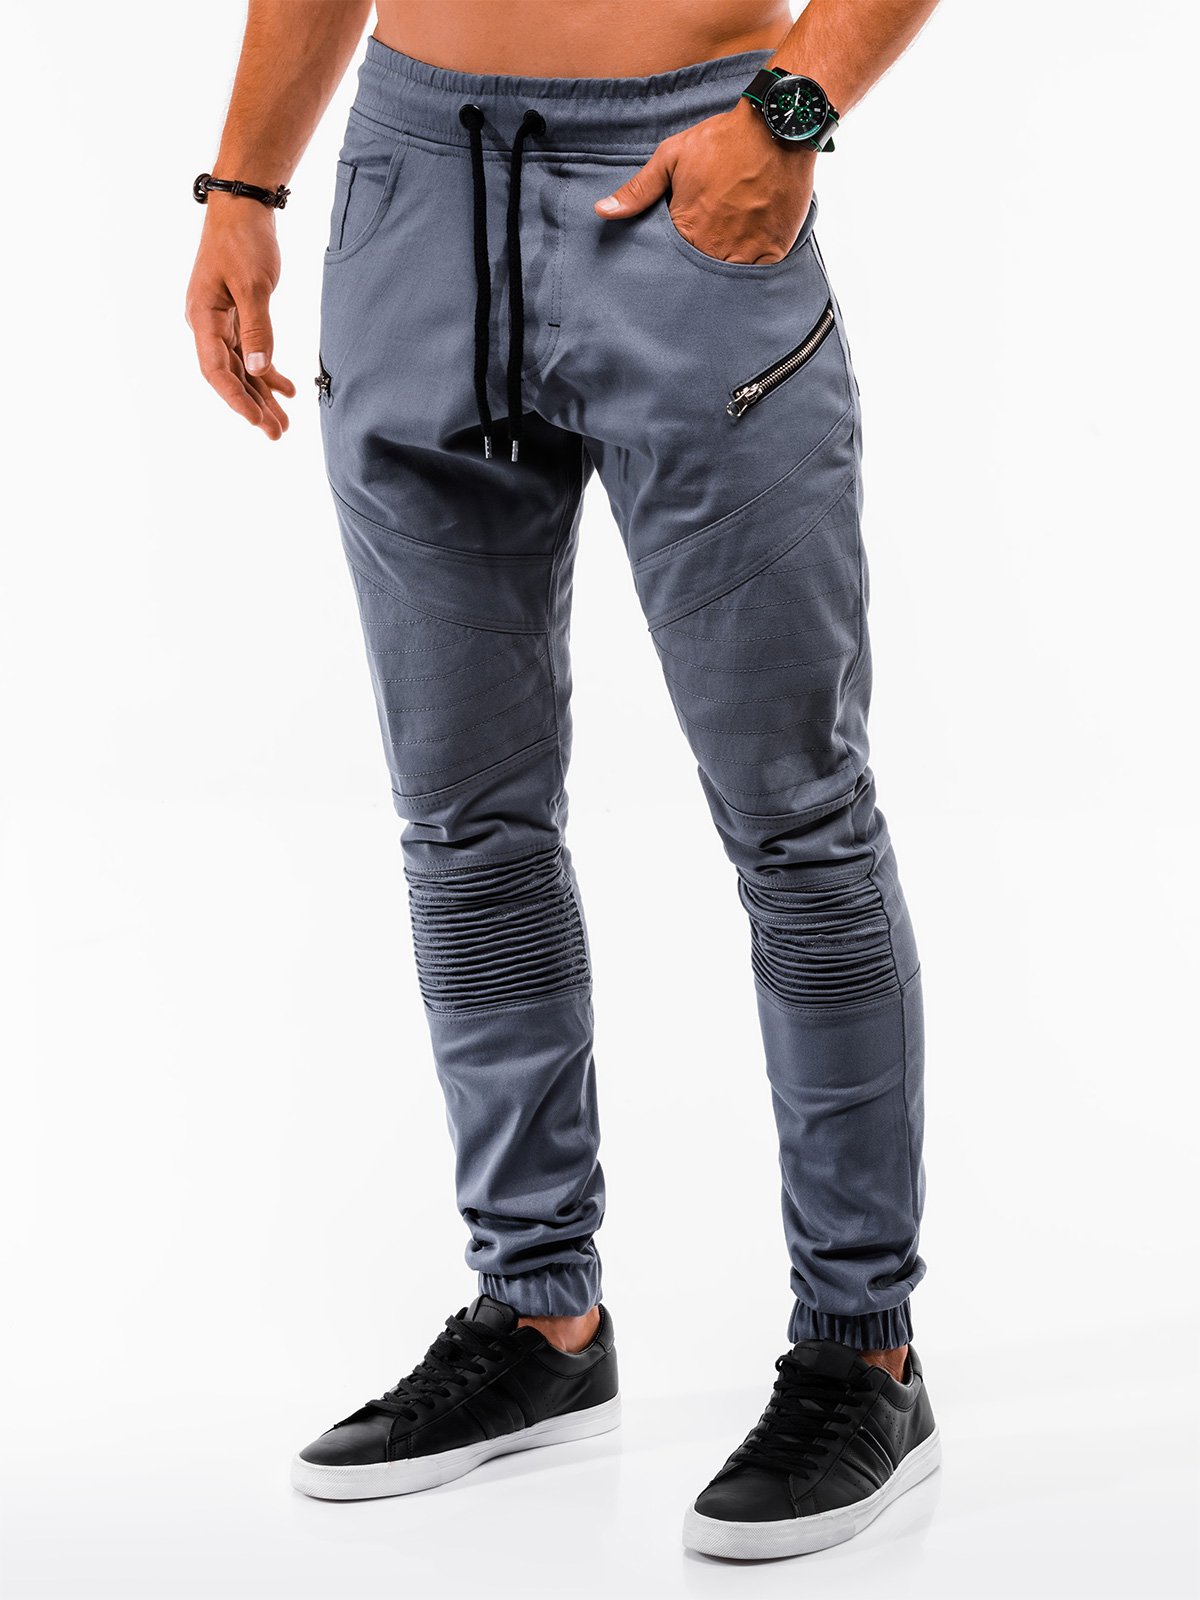 Men's pants joggers P709 - grey | MODONE wholesale - Clothing For Men